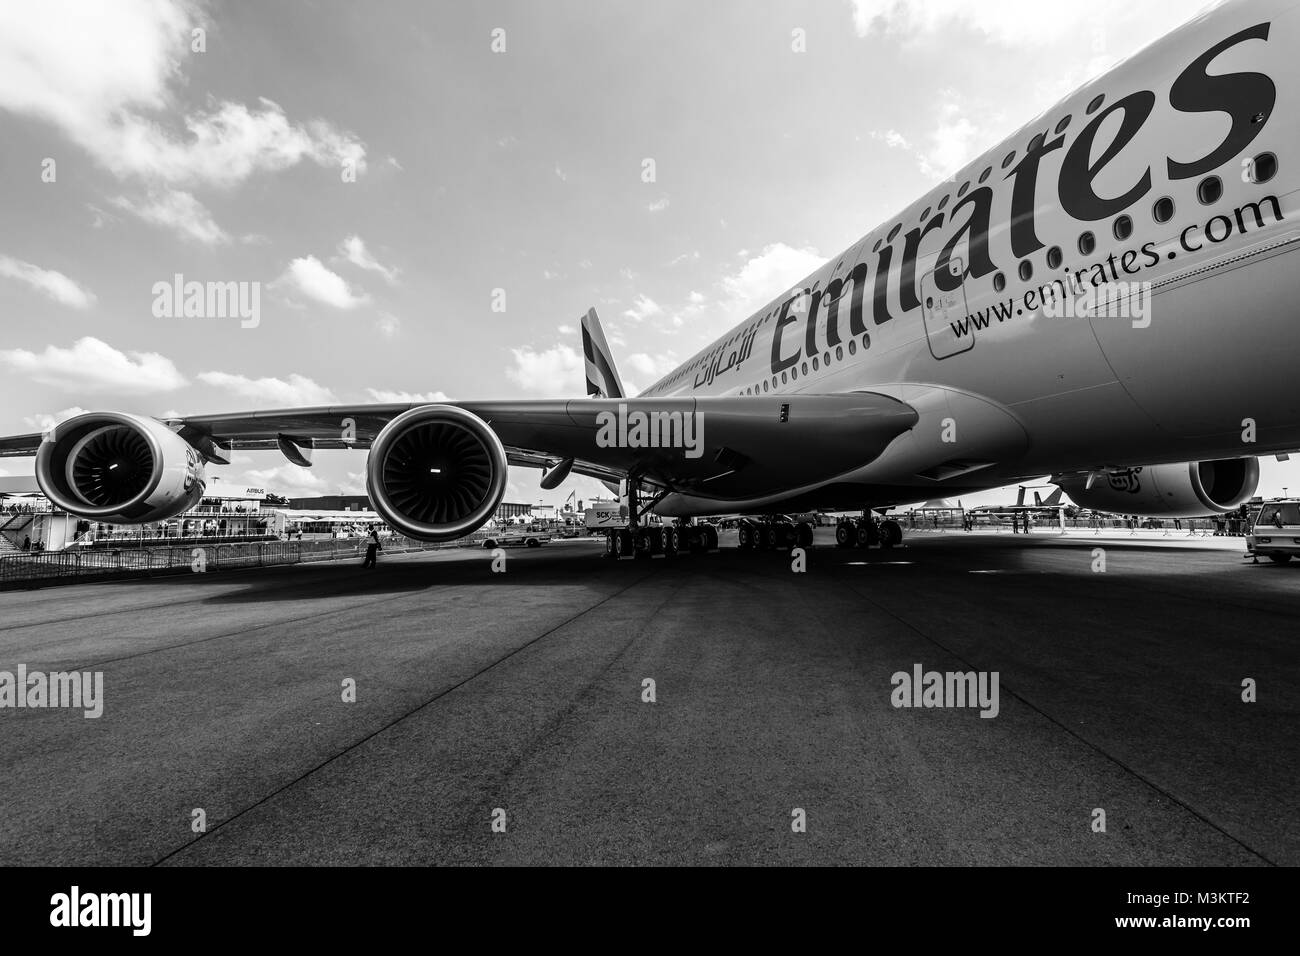 Berlino, Germania - 02 giugno 2016: dettaglio del parafango e un "turbofan Engine Alliance GP7000' dell'aereo di linea - Airbus A380. Emirates Airline. In bianco e nero. Mostra ILA Berlin Air Show 2016 Foto Stock